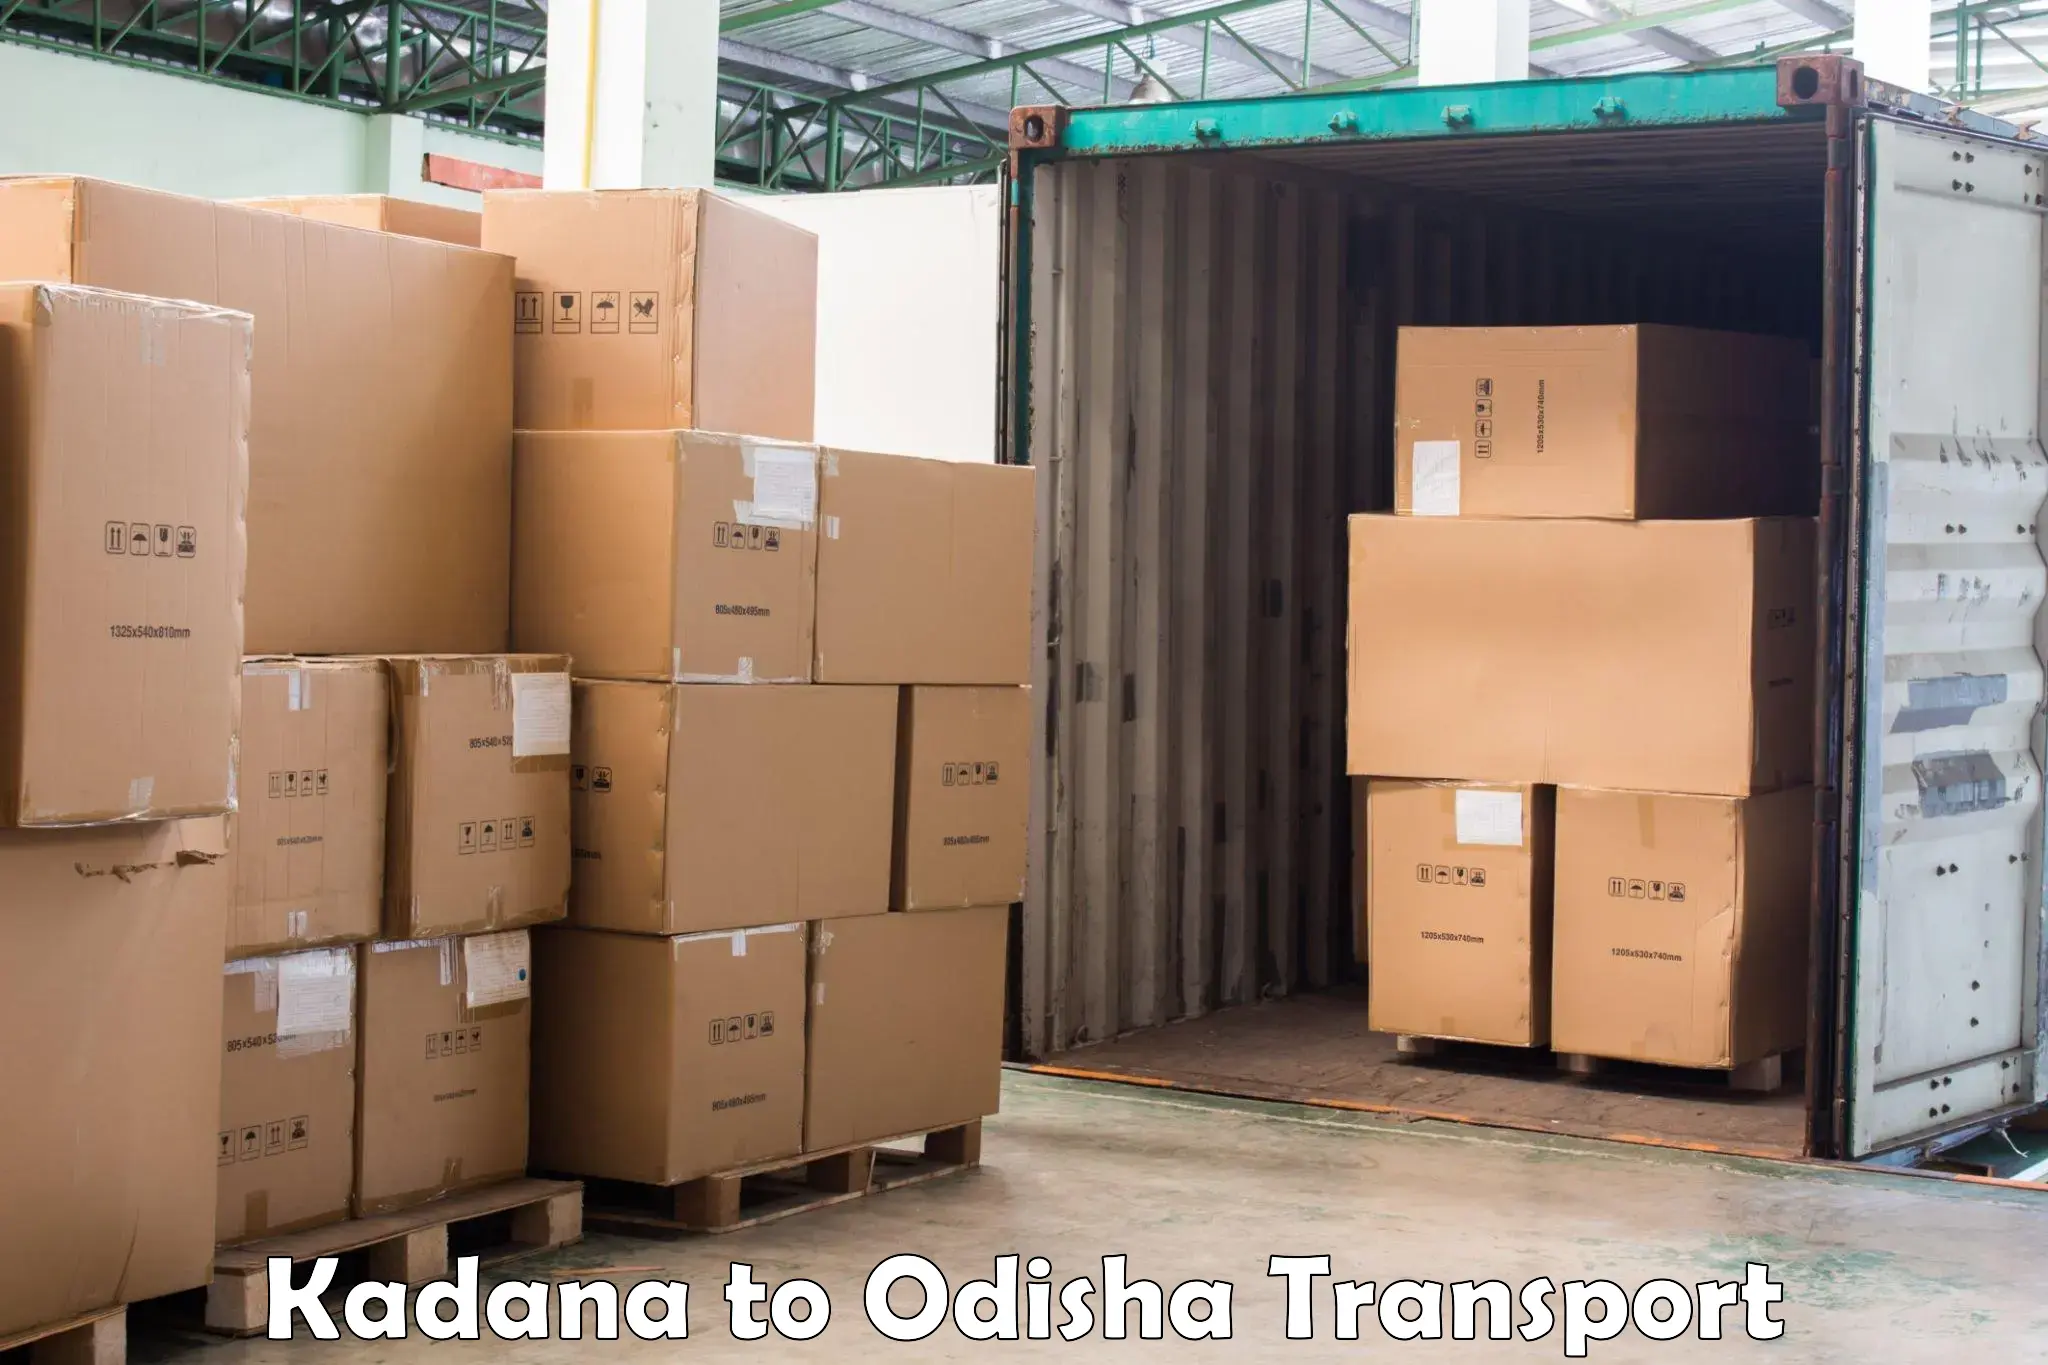 Bike shipping service in Kadana to Saintala